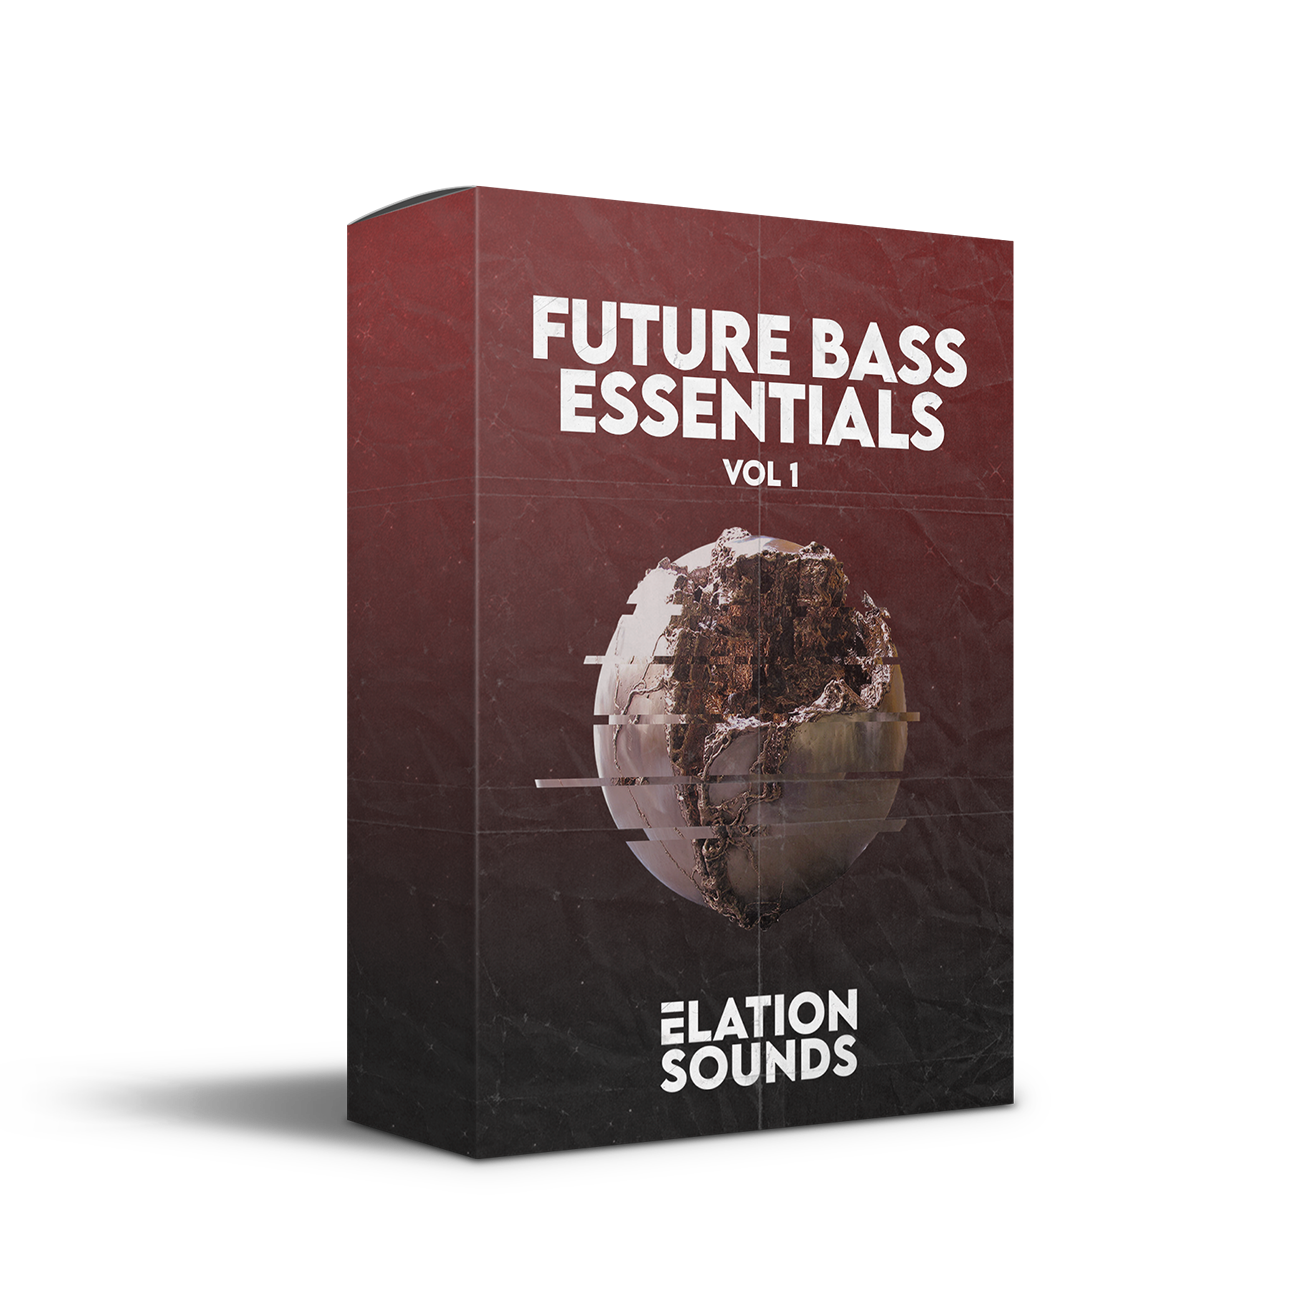 Future Bass Essentials Vol. 1